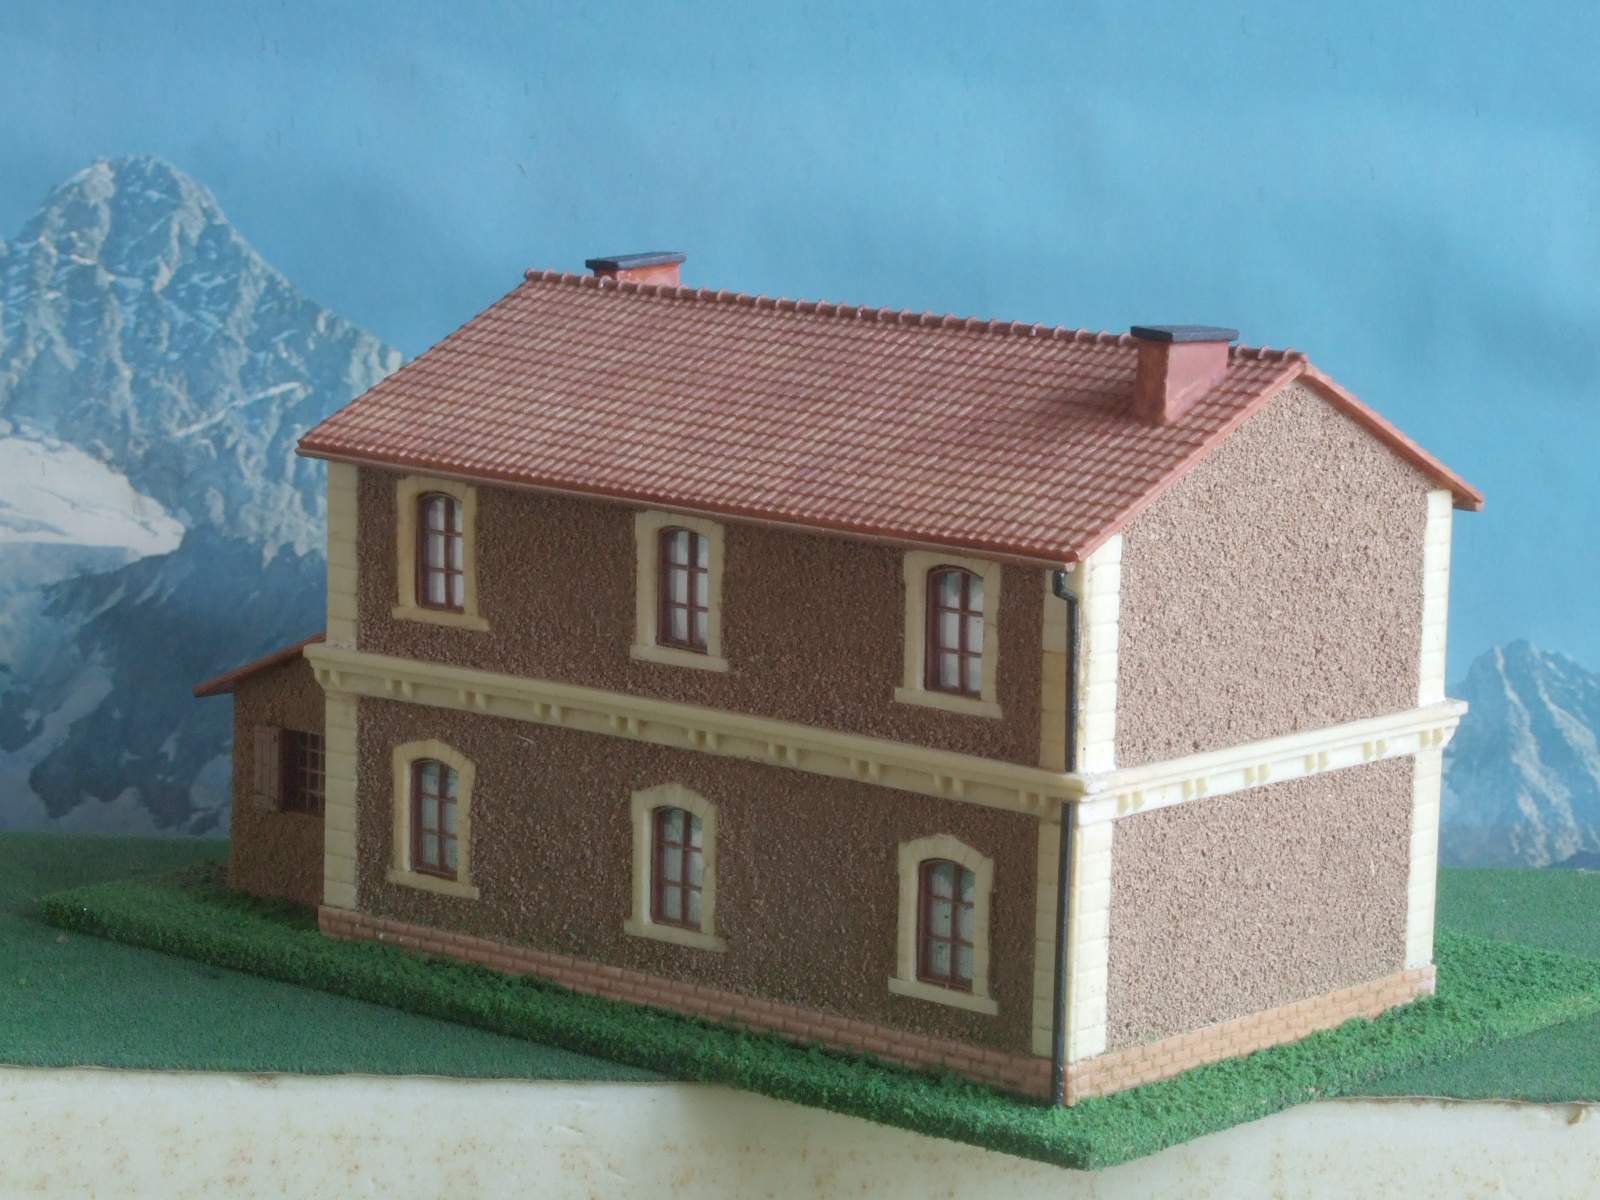 Casa di campagna - Edificio stile Italiano per modellismo scala HO - 1:87 Krea